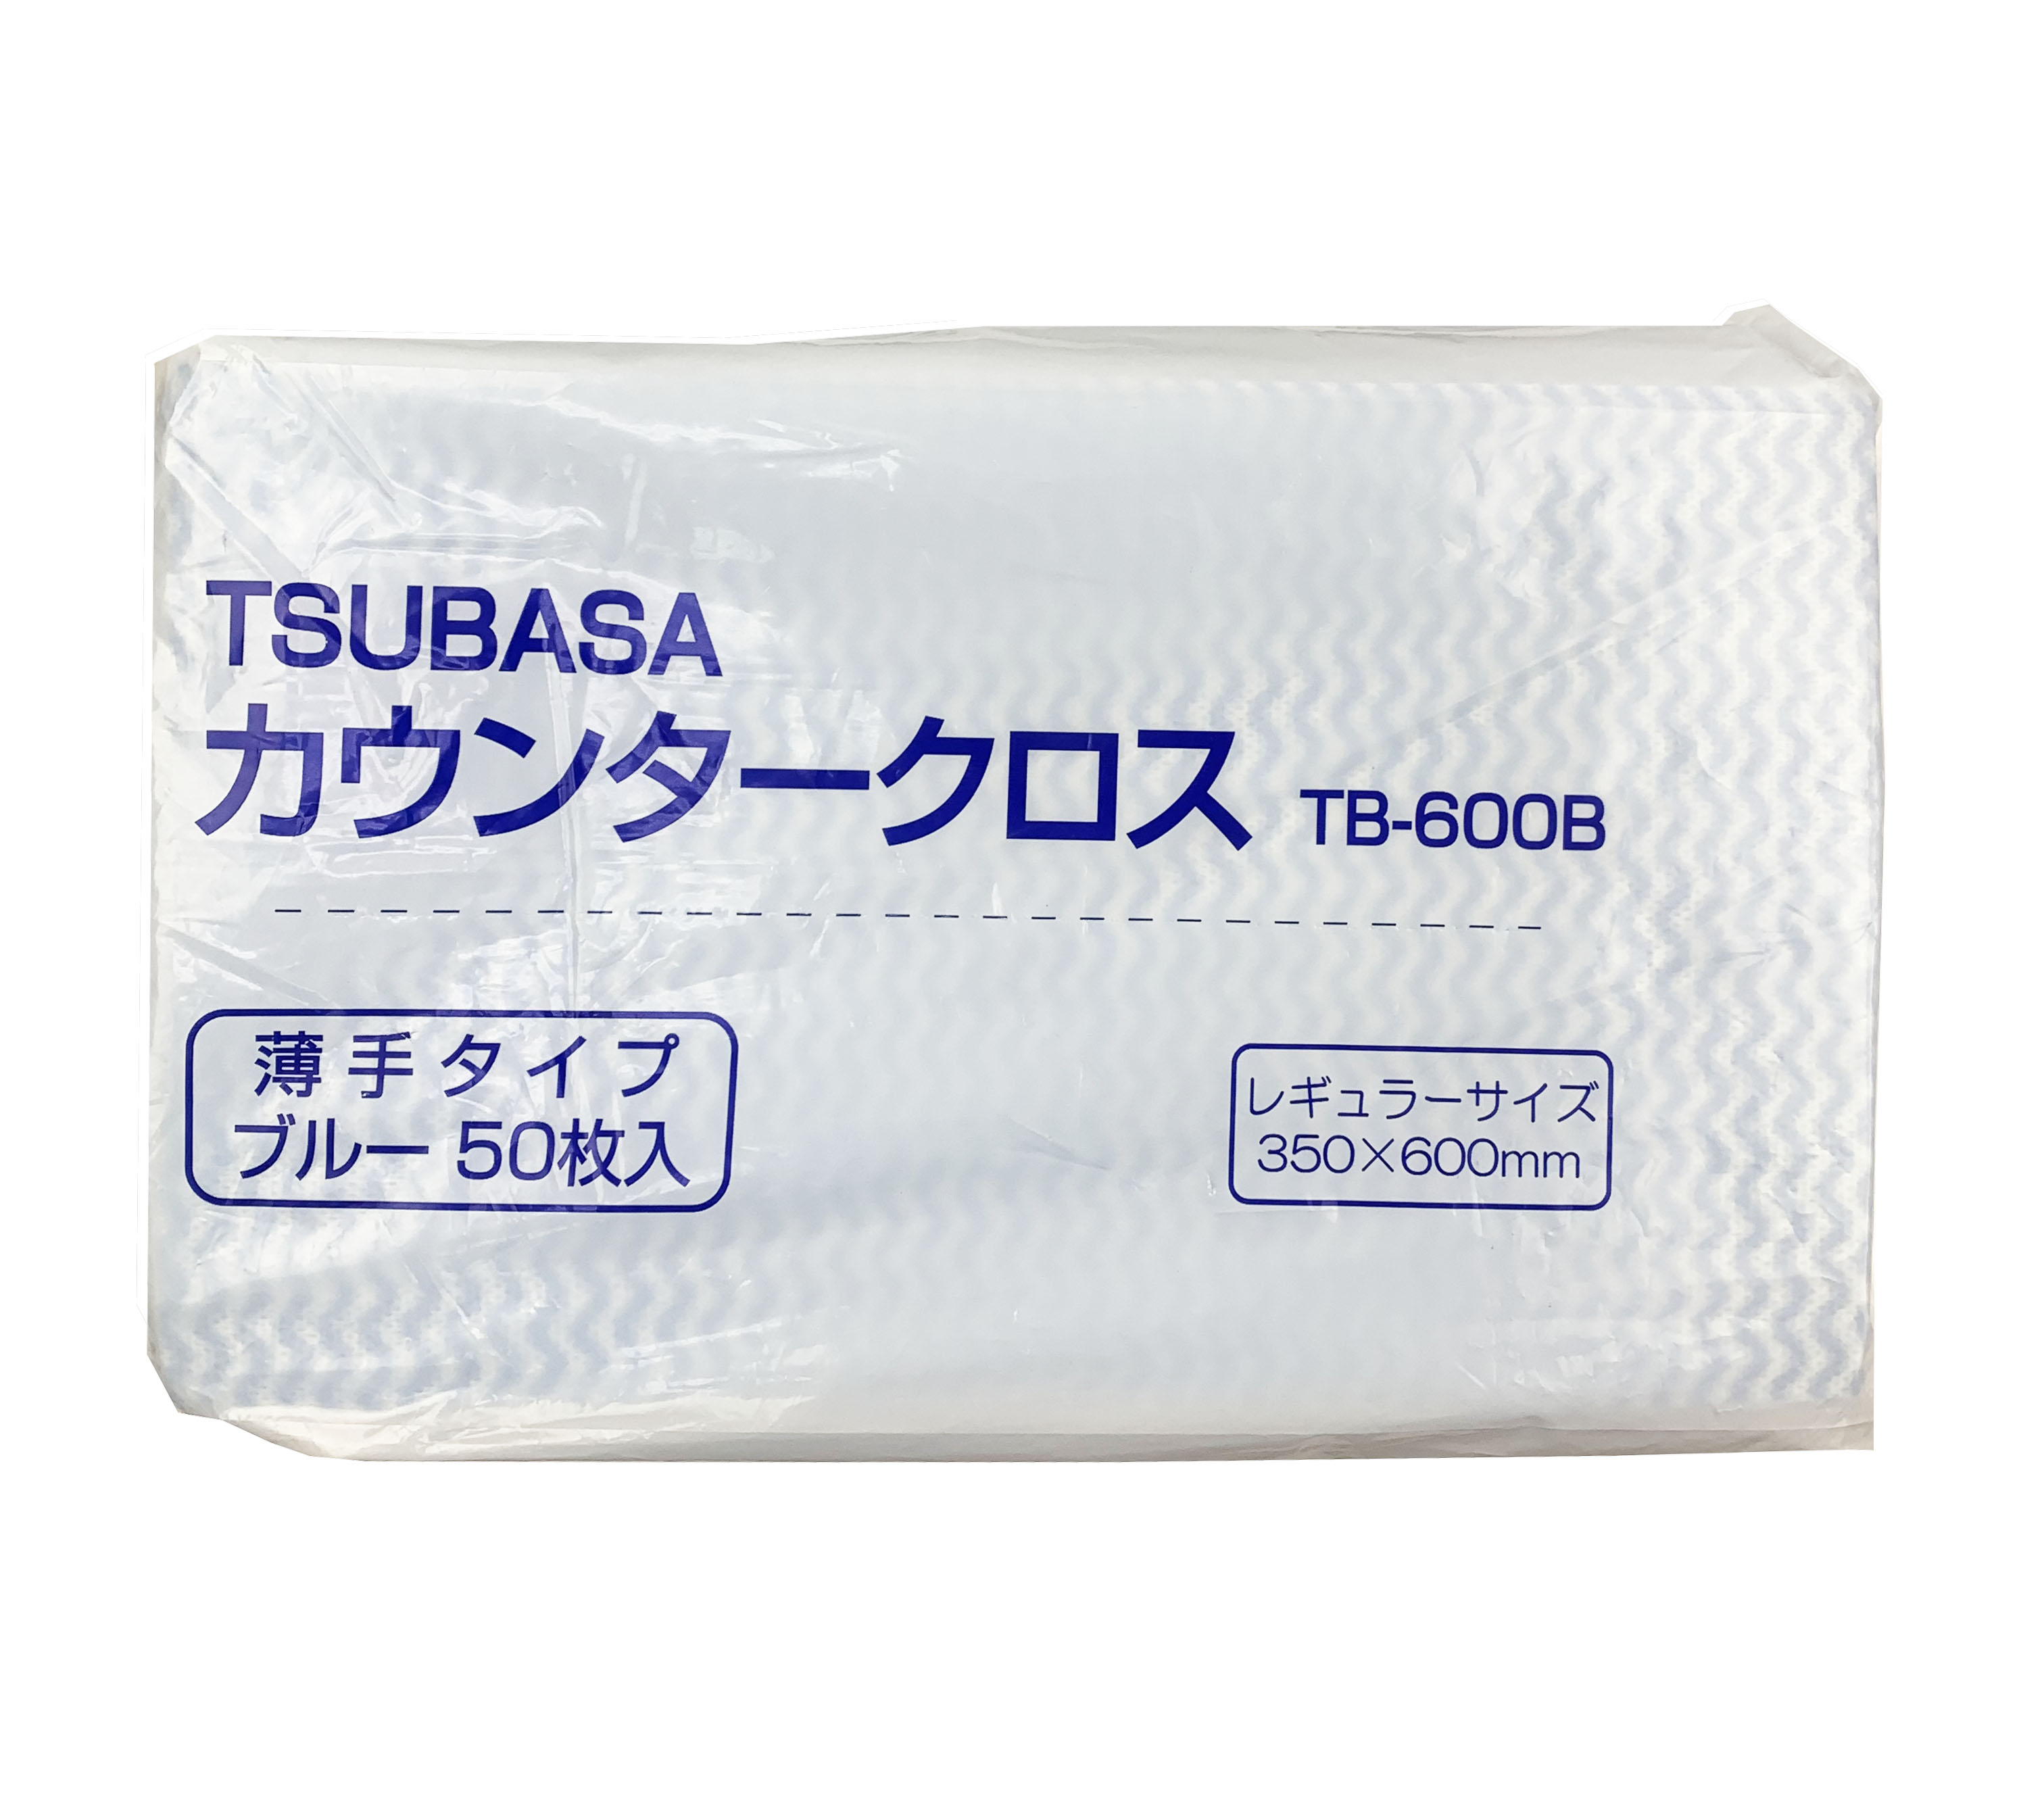 ※新商品※【つばさ】TSUBASA カウンタークロス(ダスター) 薄手タイプ (60cm×35cm) 50枚入り ブルー